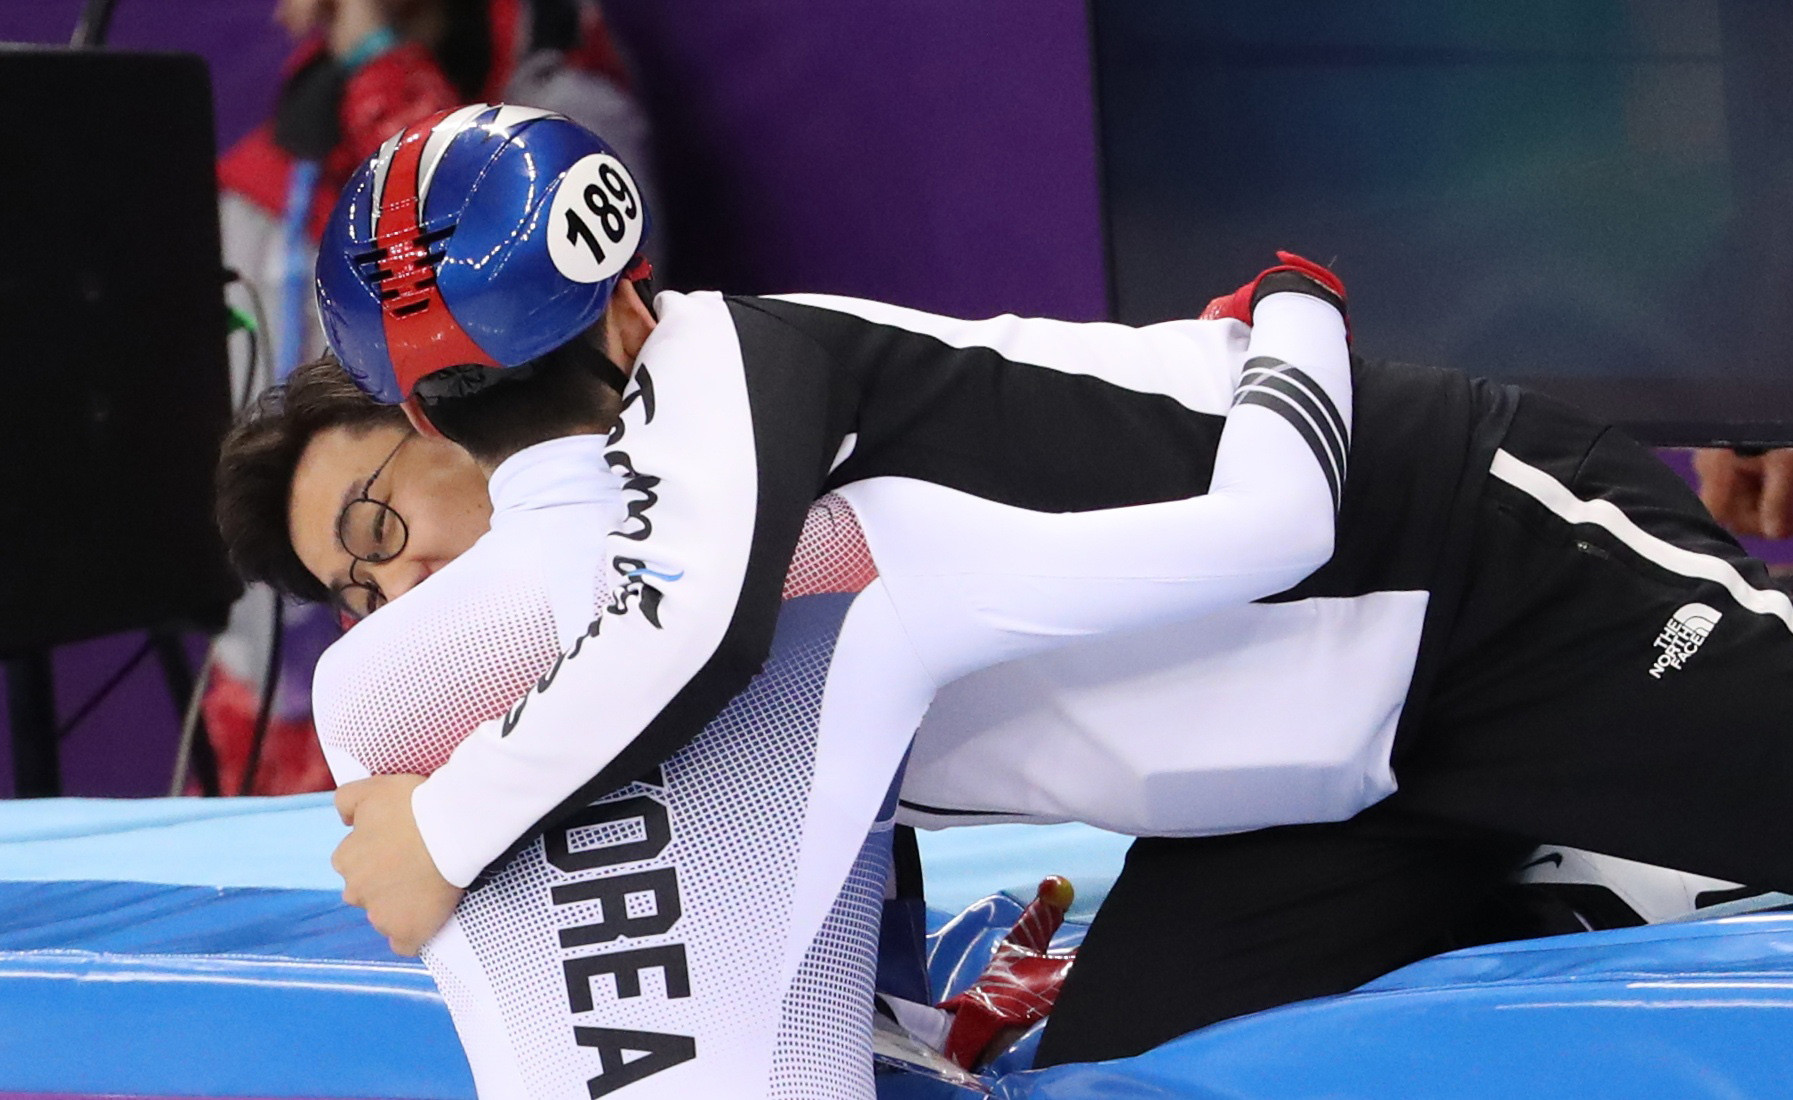 Корейский шорт-трекист Лим Хё Юн принимает поздравления с золотой медалью на Олимпиаде. Фото: © REUTERS/Lucy Nicholson